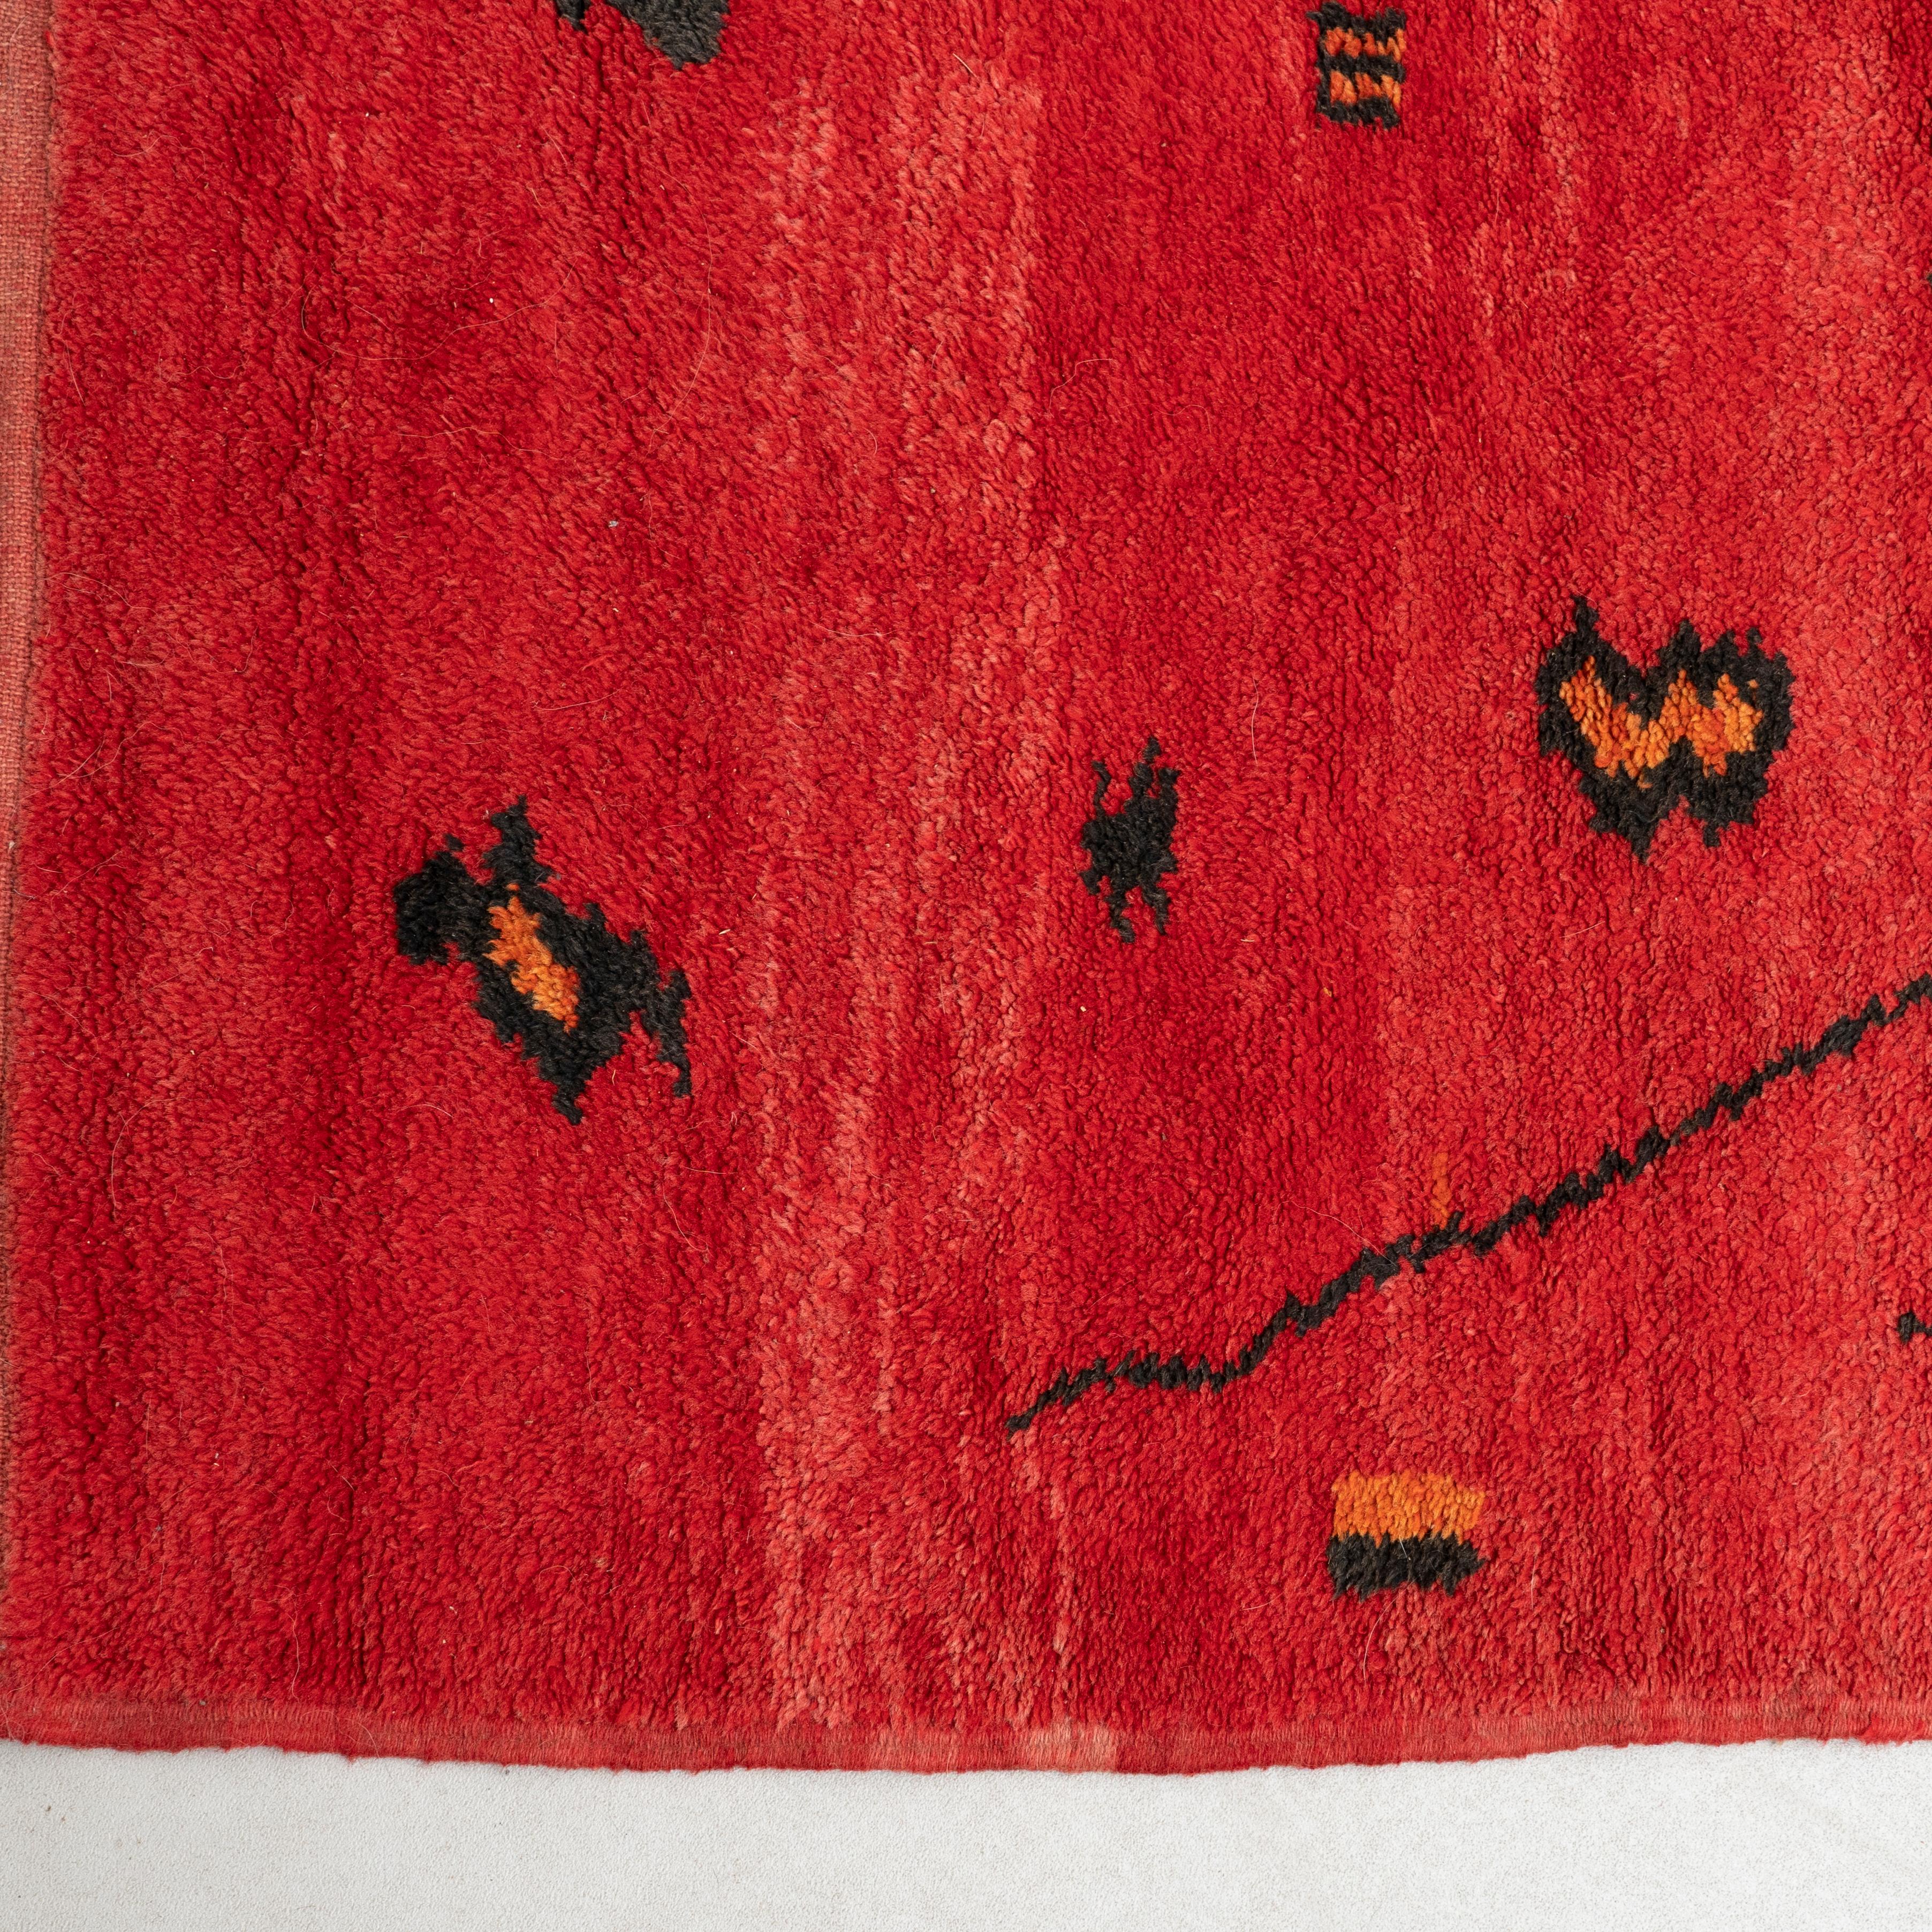 Handgefertigter marokkanischer Teppich aus gewebter Wolle.

Hergestellt von einem unbekannten Hersteller in Marokko, um 1960.

Originaler Zustand mit geringen alters- und gebrauchsbedingten Abnutzungserscheinungen, die eine schöne Patina erhalten